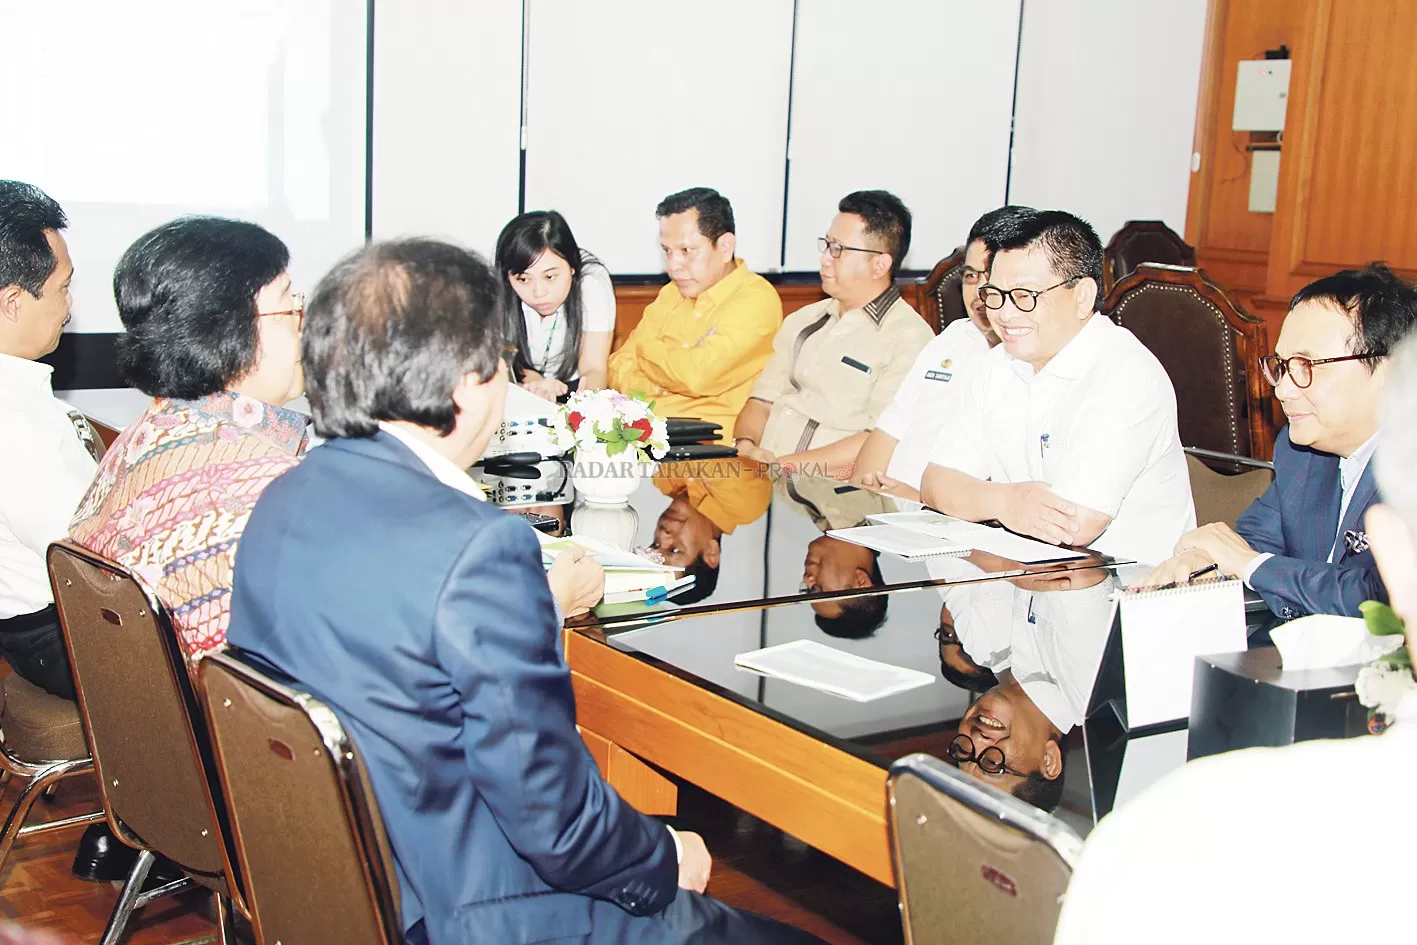 AUDIENSI: Gubernur Kaltara, Dr. H. Irianto Lambrie beraudiensi dengan Menteri LHK Siti Nurbaya Bakar terkait status lahan tambak di Kaltara, di Kantor KLHK, Rabu (29/1).